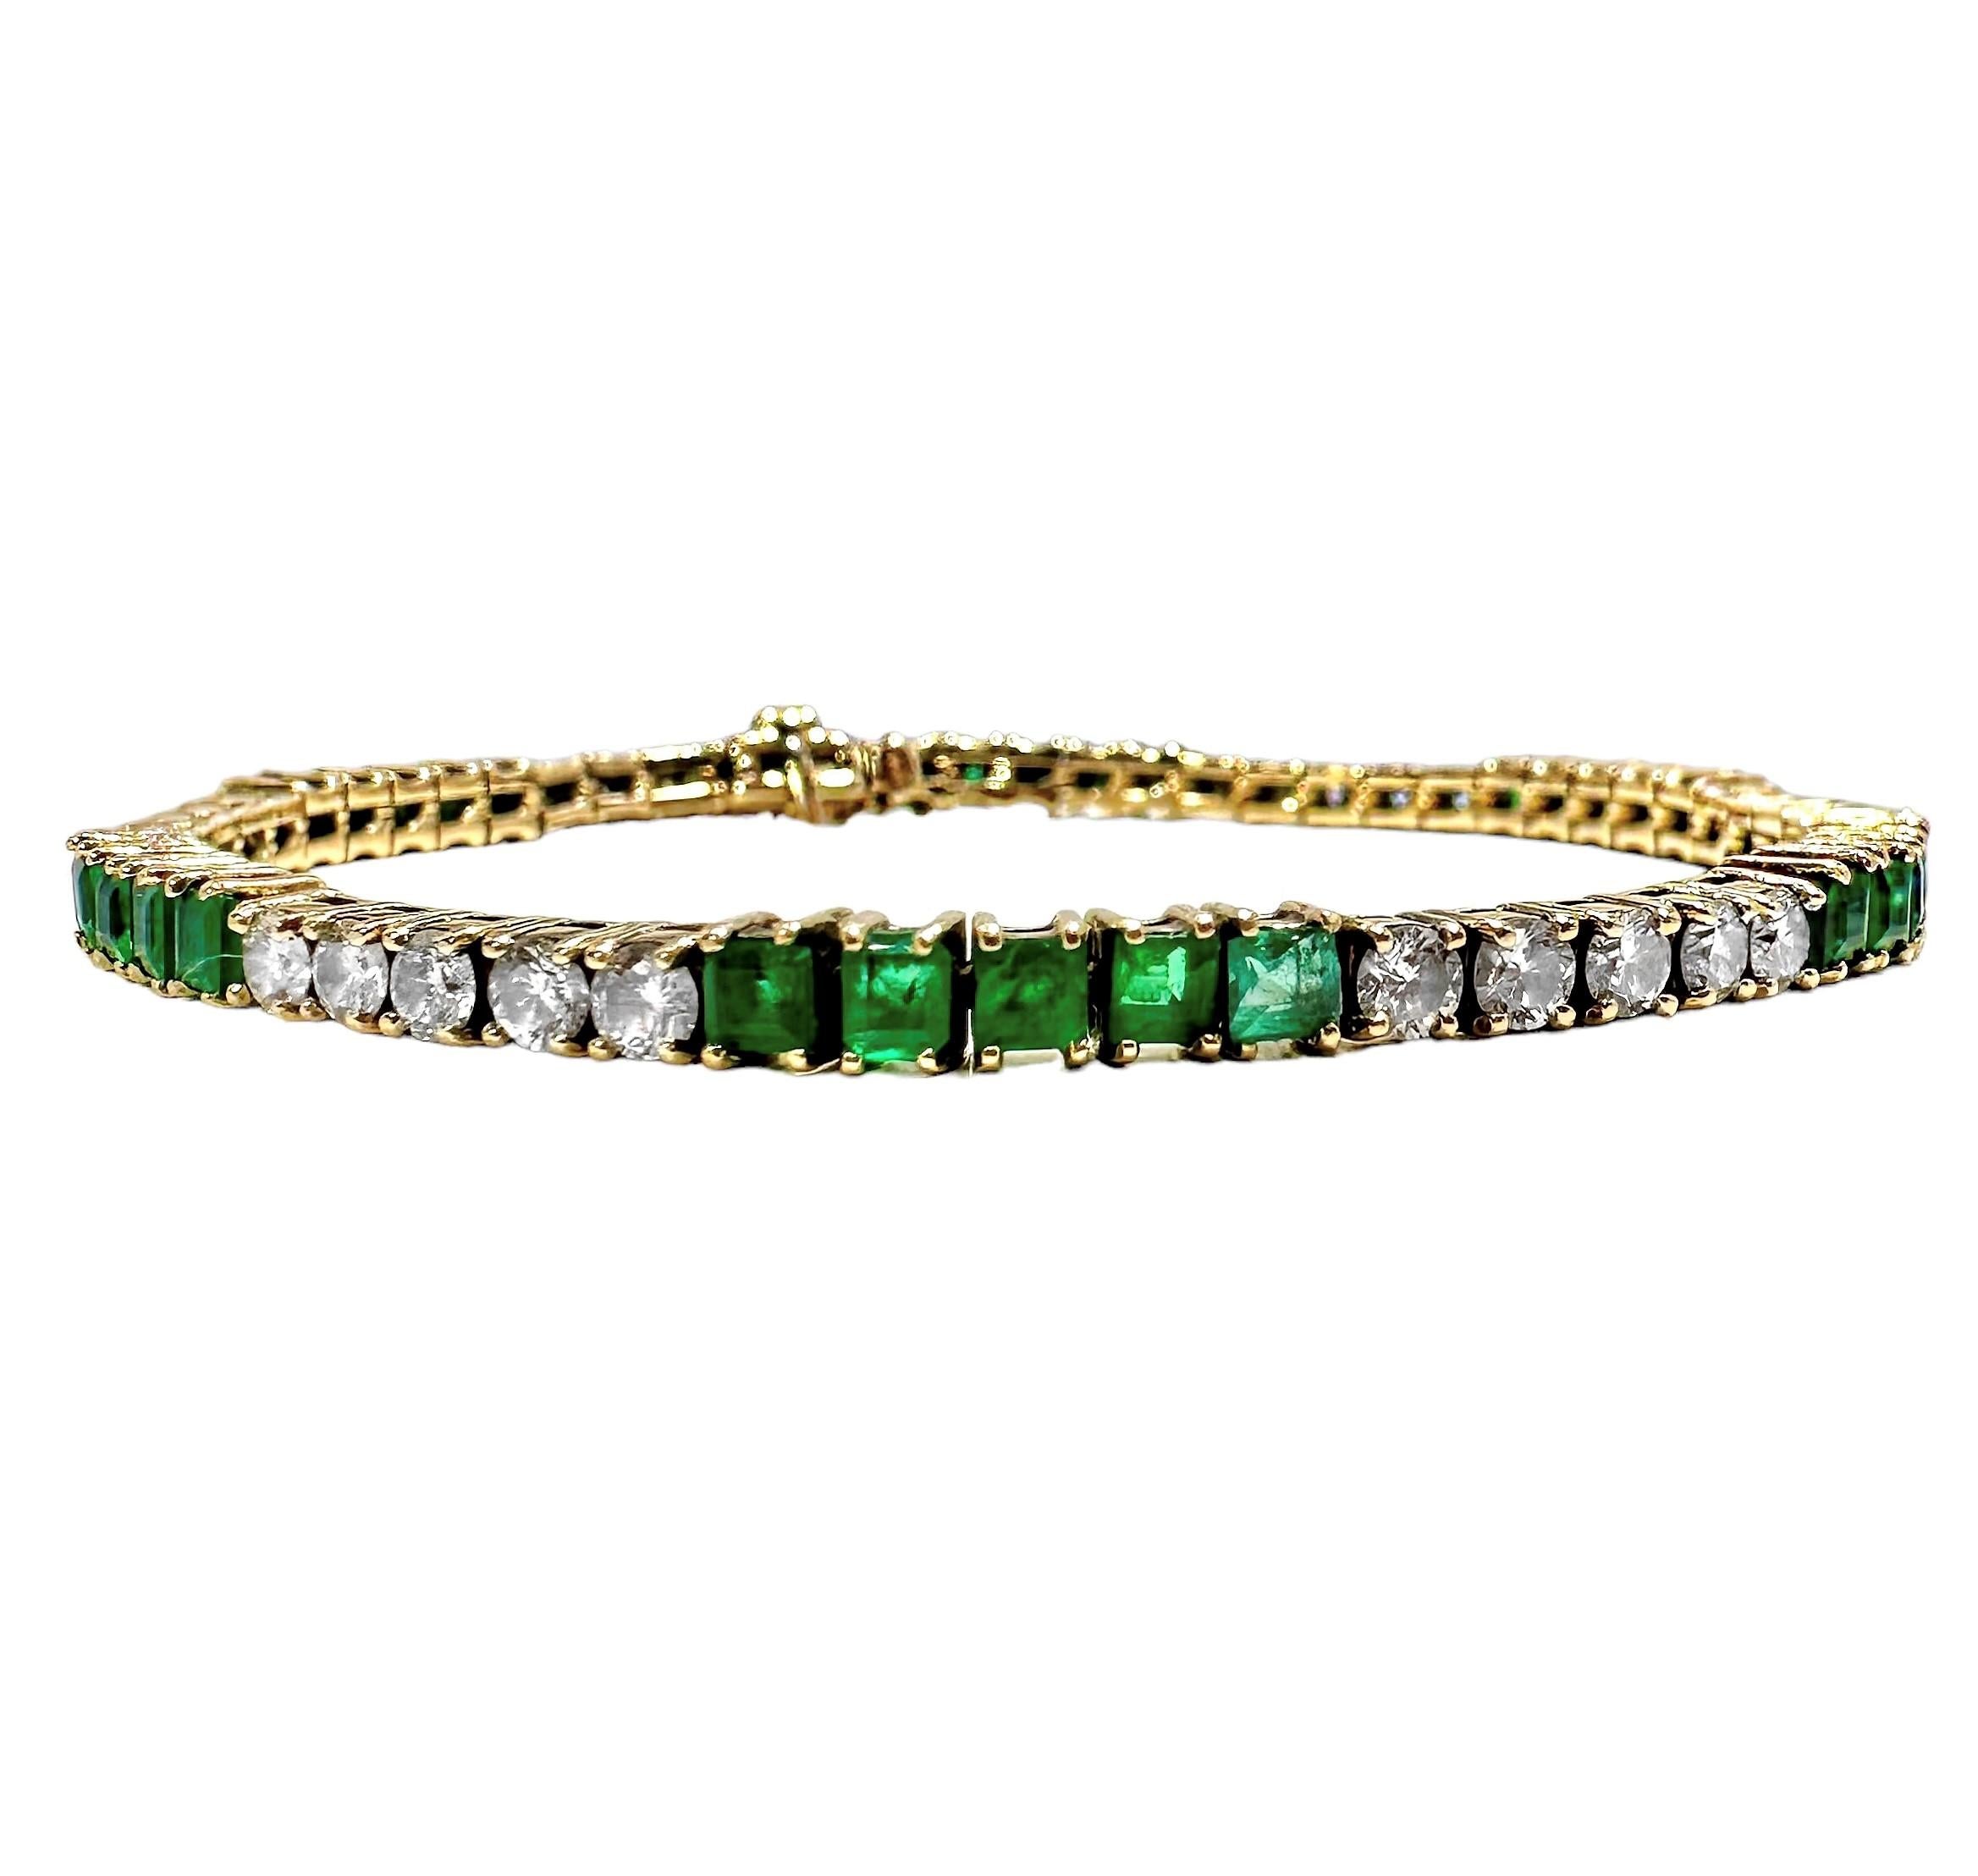 Ce délicat bracelet tennis français du milieu du XXe siècle a été habilement fabriqué en or jaune 18 carats, avec des sections alternées de 5 pierres, diamants taille brillant et émeraudes vertes brillantes. Les 30 diamants ont un poids total